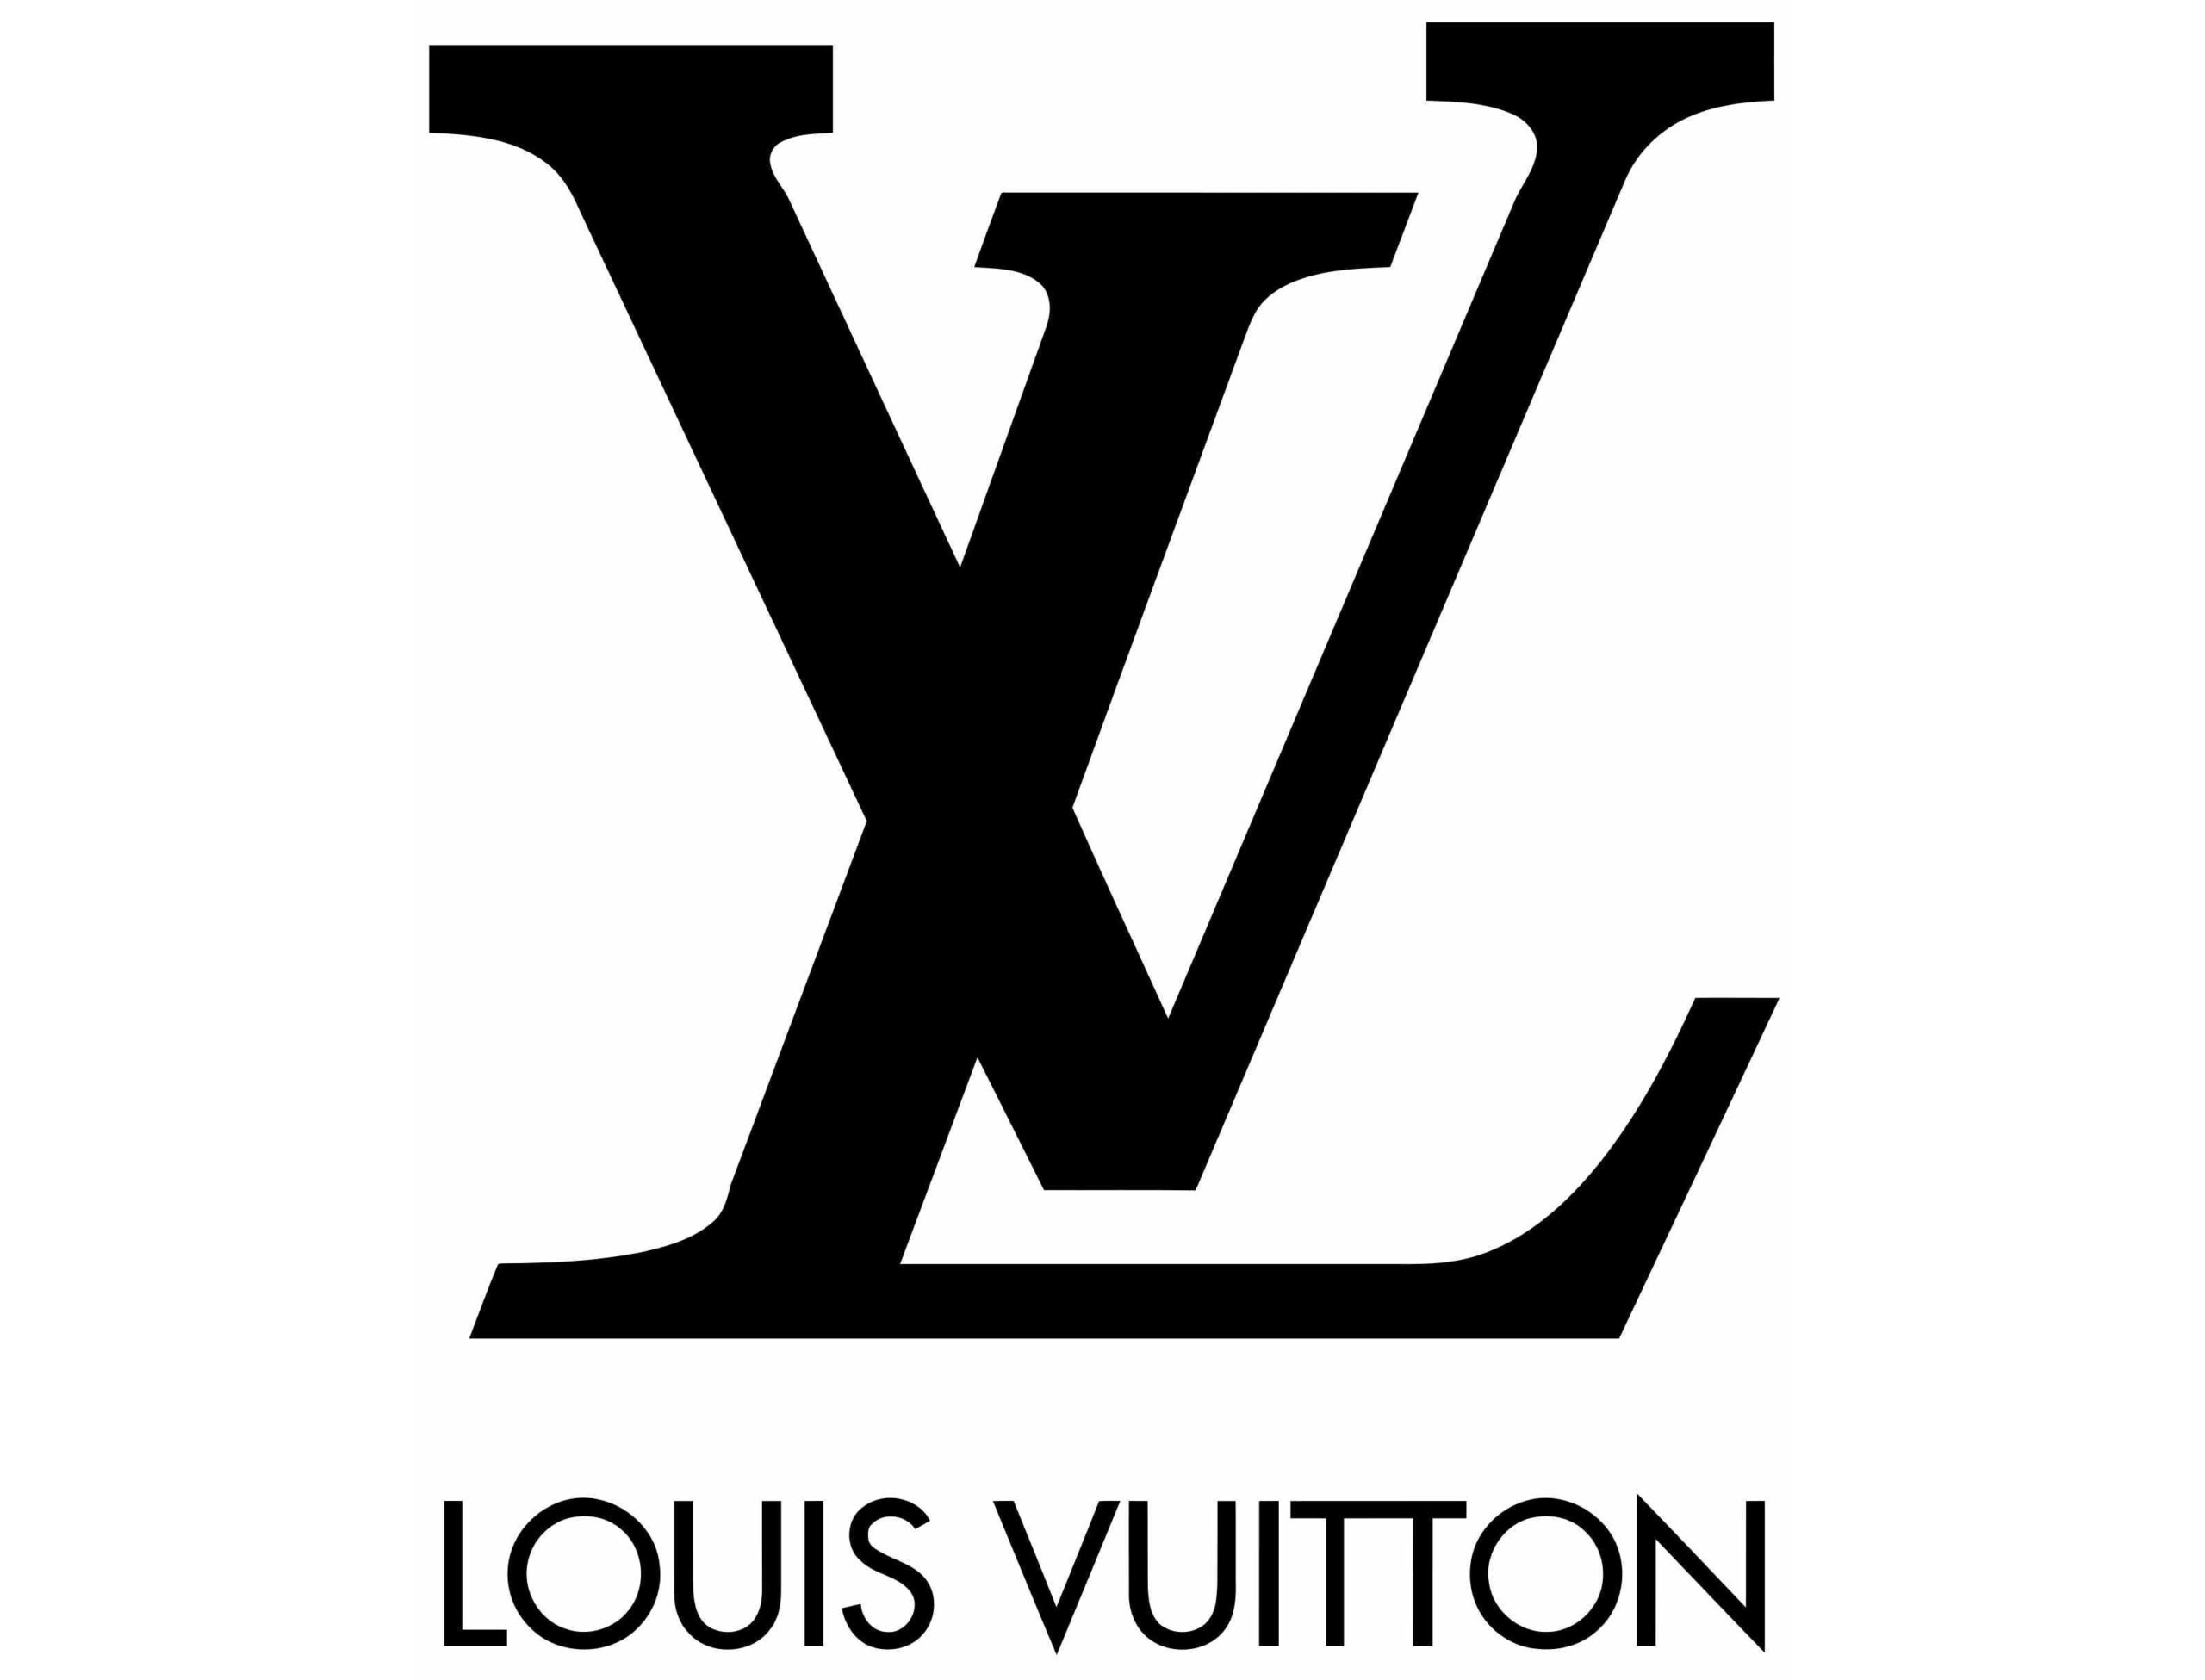 Logo Louis Vuitton : lettres stylisées "LV" sur fond transparent.